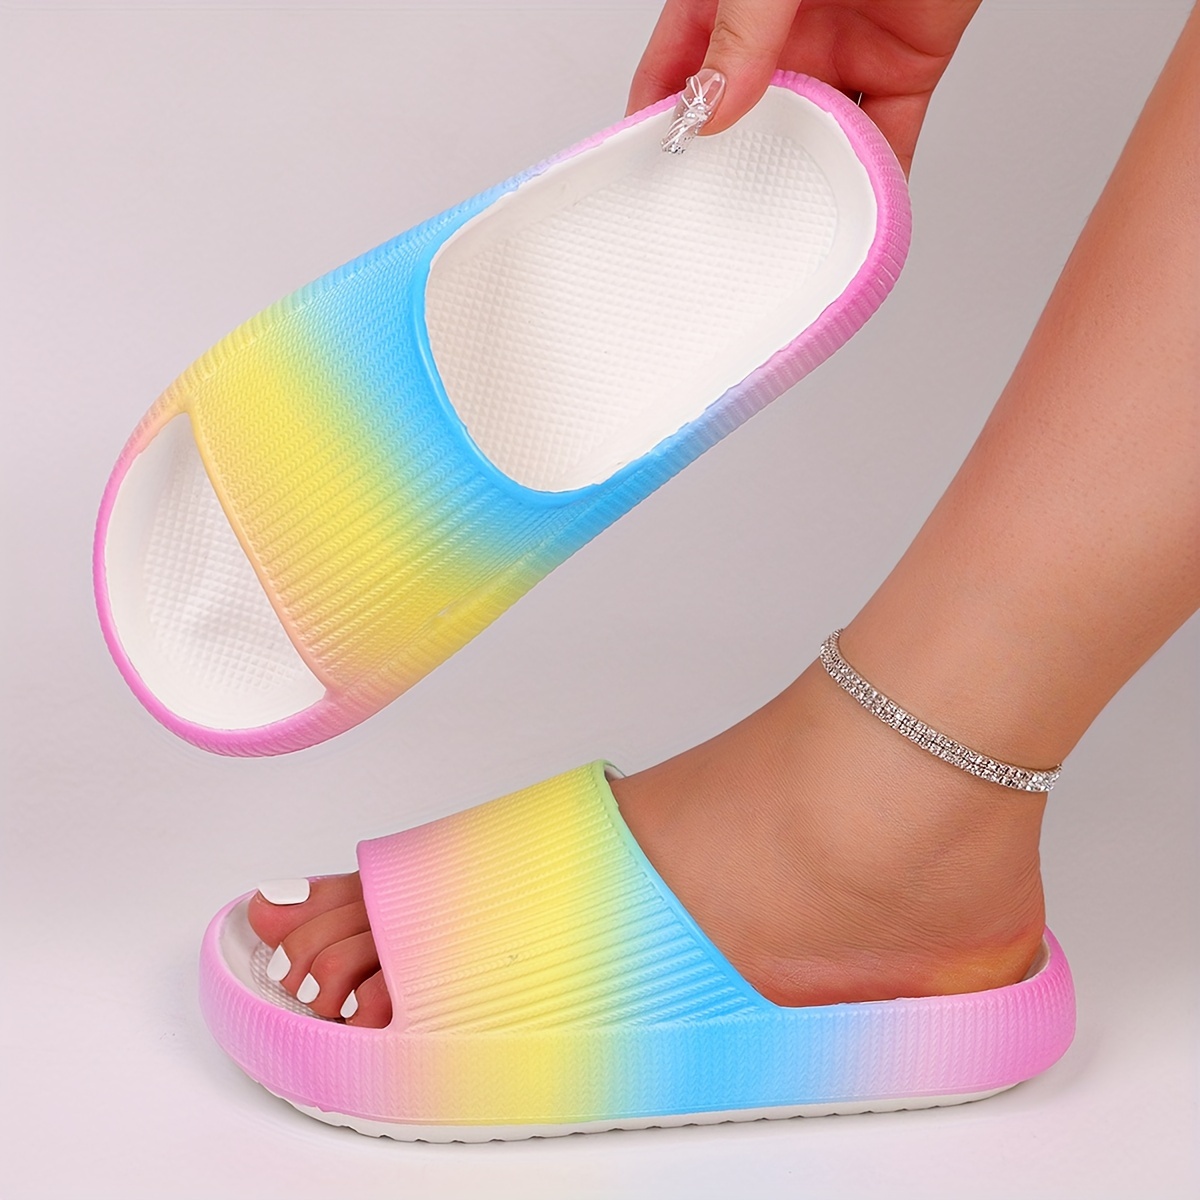 

Women's Colorful Rainbow Print Slides, Open Toe Eva Shower Slides, Soft Sole Platform Comfortable Sandals